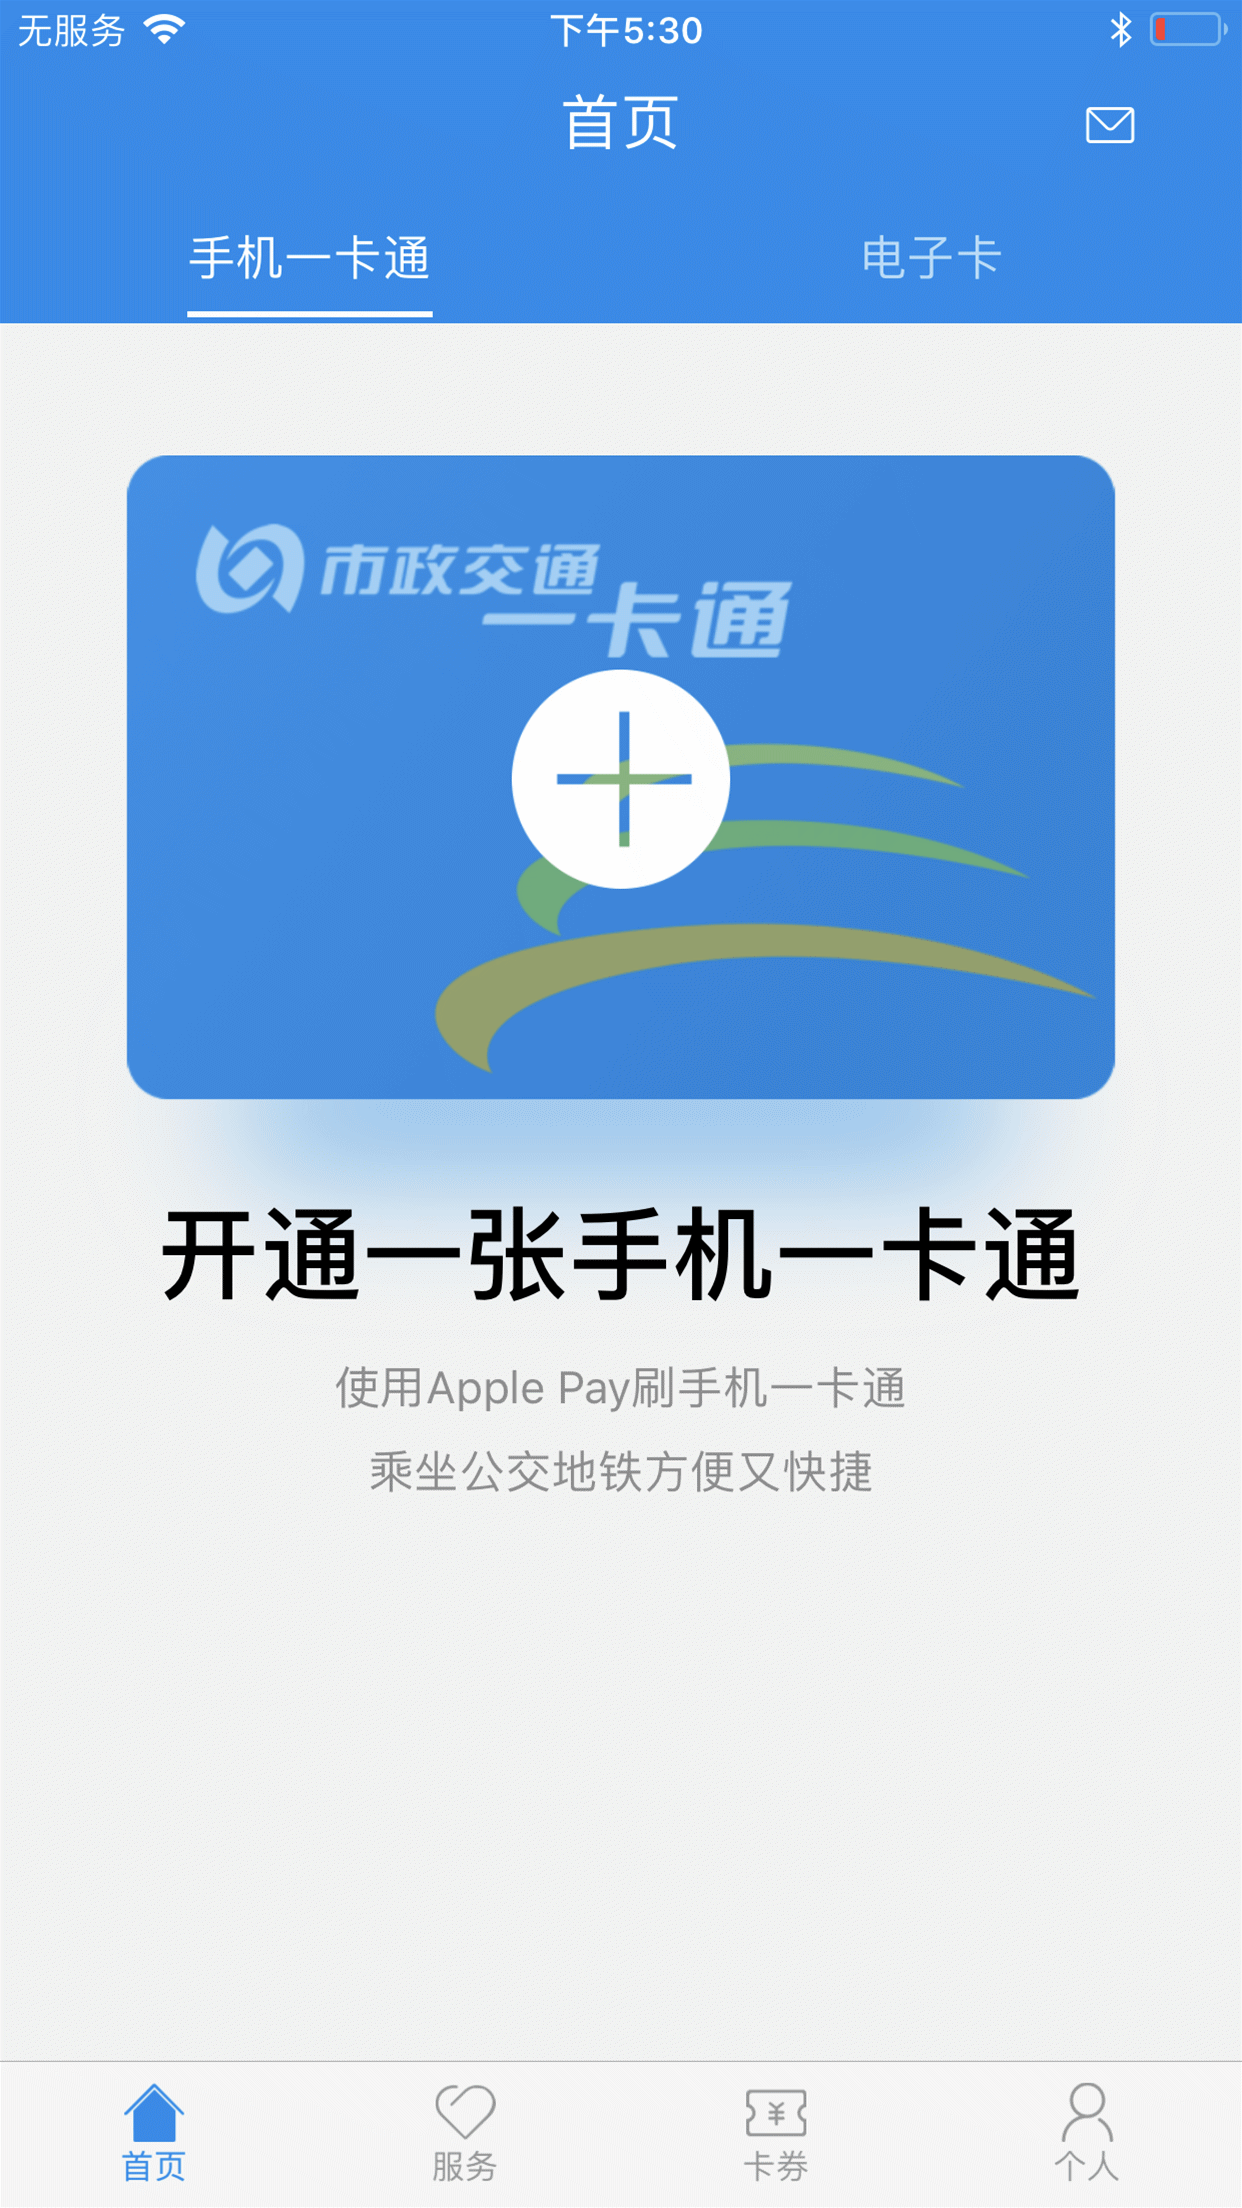 您可以长按识别下方二维码或者在App Store中搜索“北京一卡通” app下载